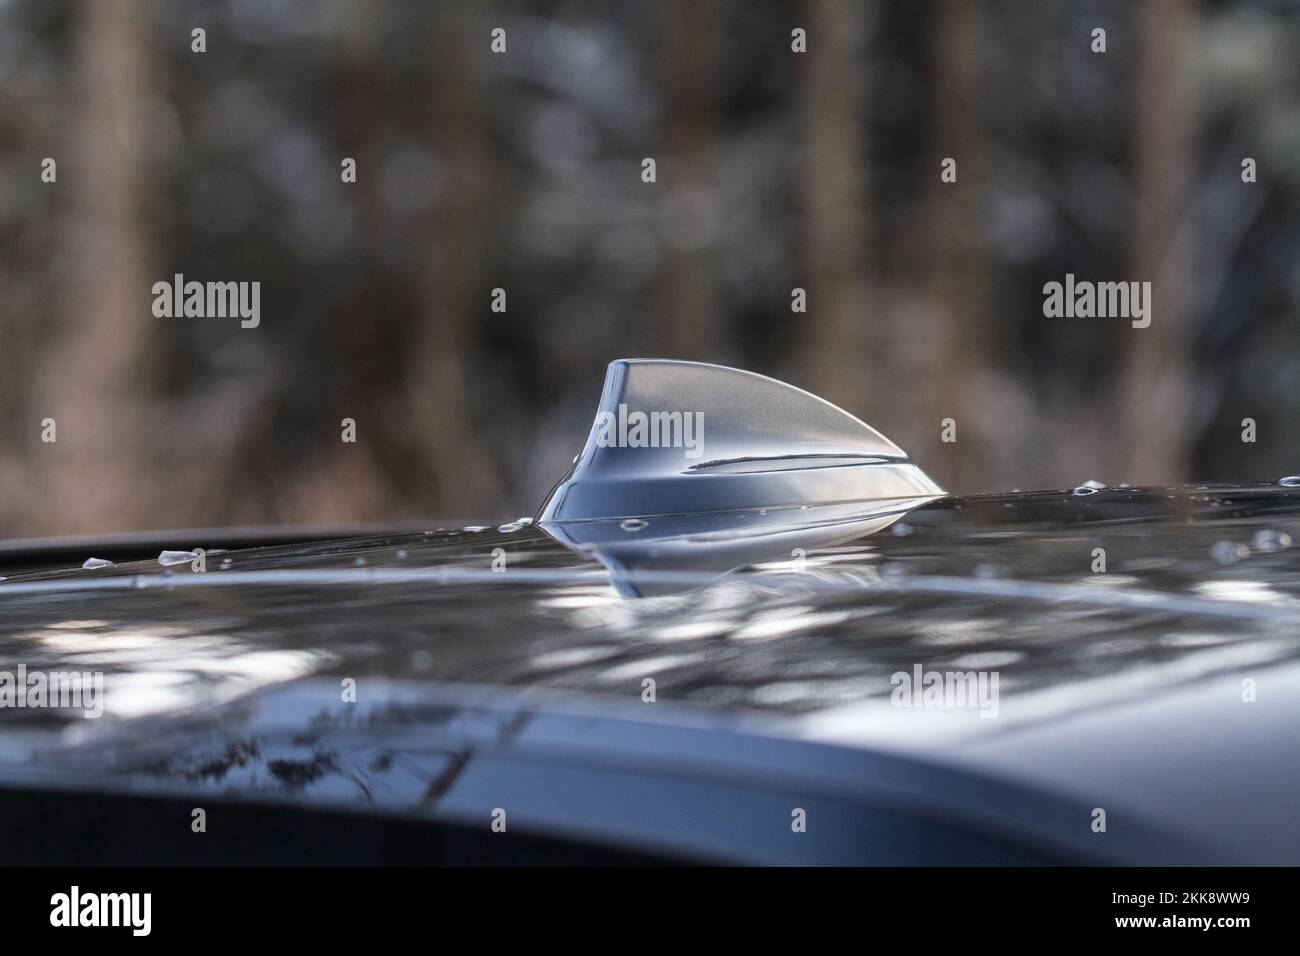 Antena de aleta de tiburon fotografías e imágenes de alta resolución - Alamy